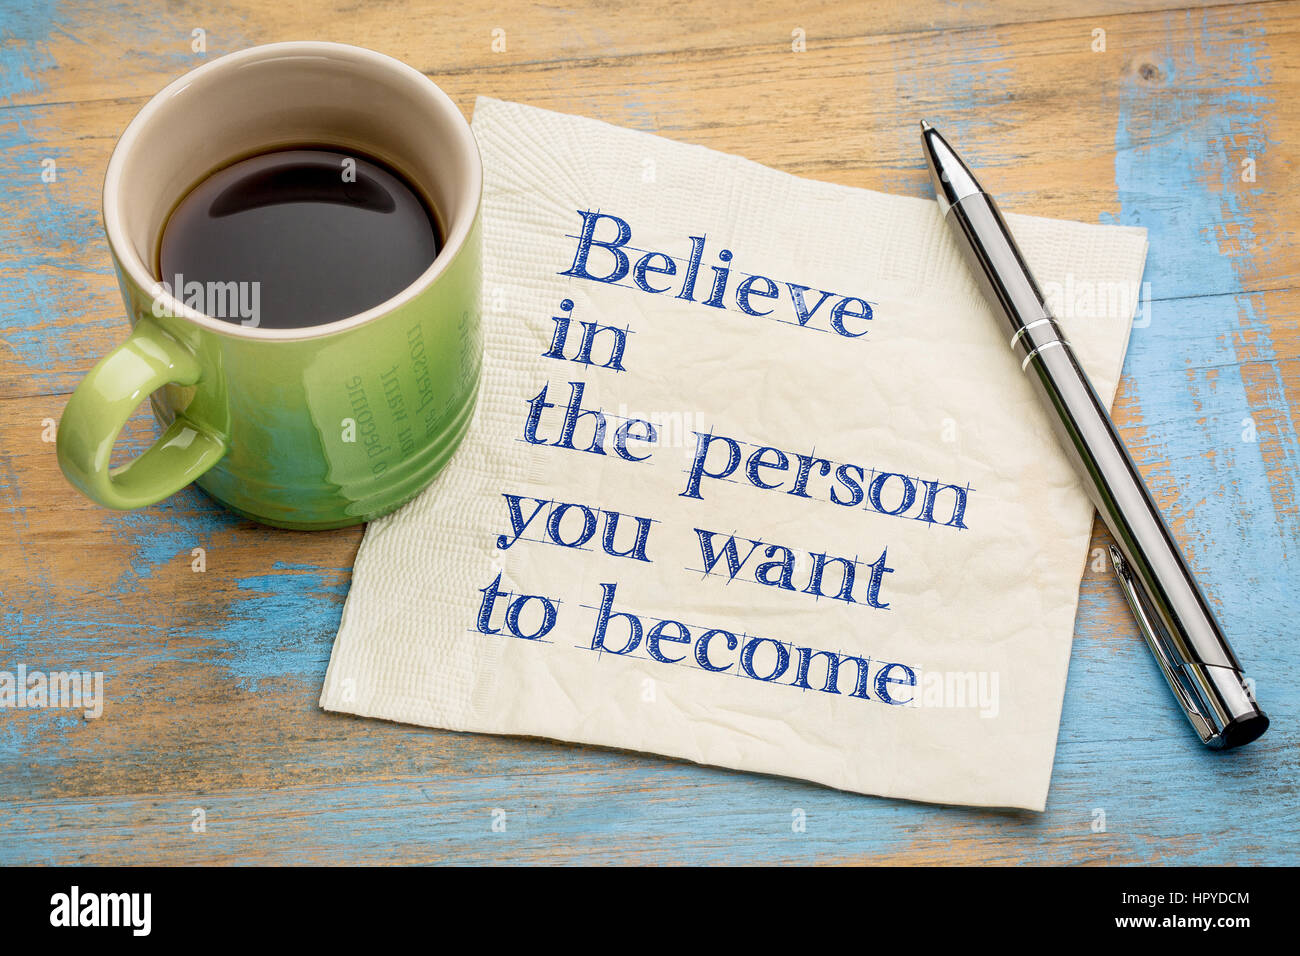 Glauben Sie an die Person, die Sie zu werden-Handschrift auf einer Serviette mit einer Tasse Espressokaffee Stockfoto